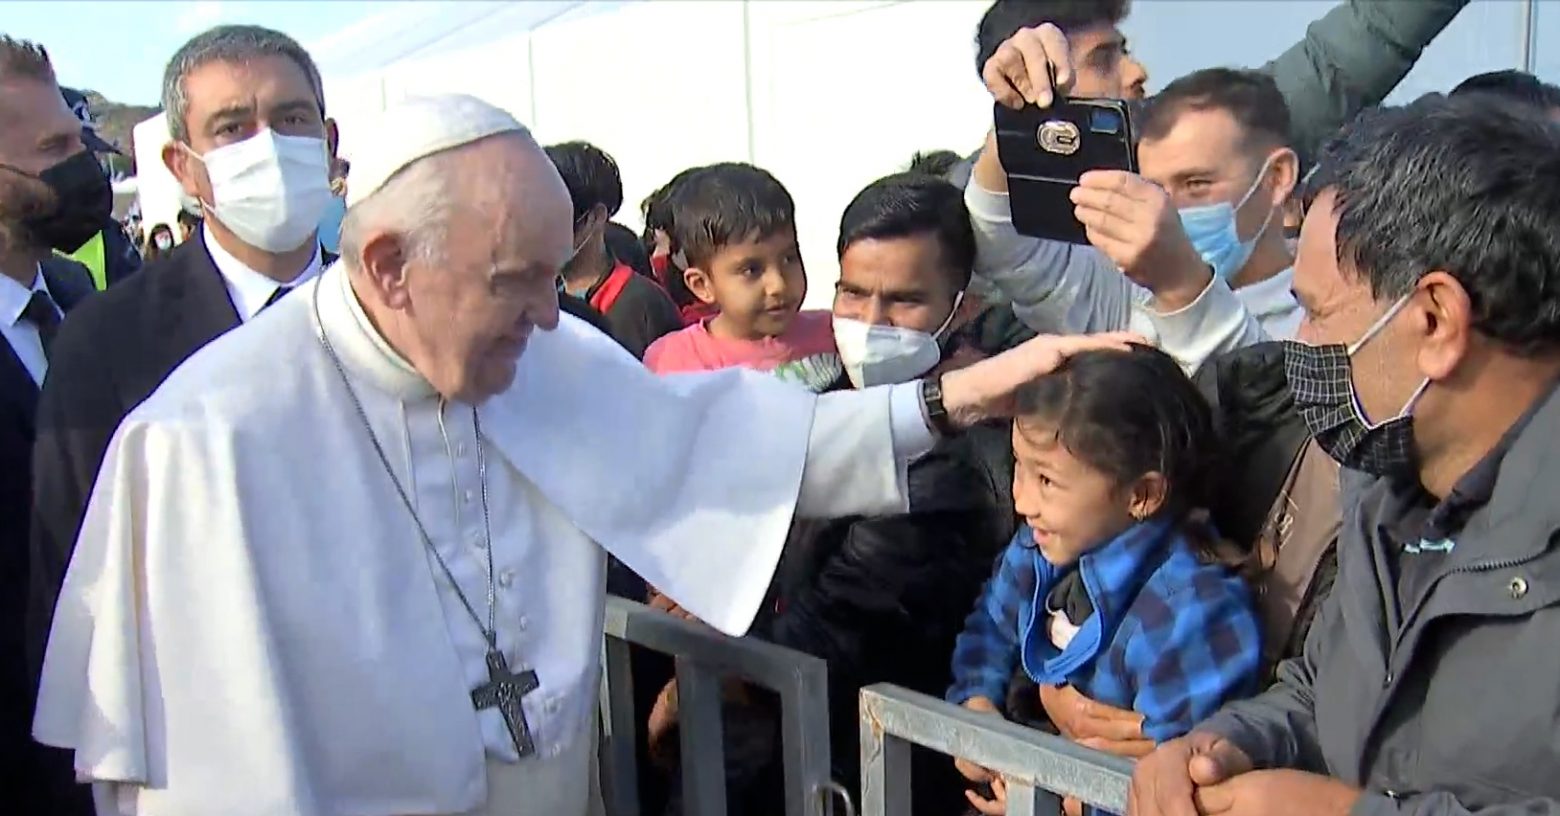 Πάπας Φραγκίσκος - Θερμή υποδοχή από τους πρόσφυγες και μετανάστες στο ΚΥΤ στη Μυτιλήνη